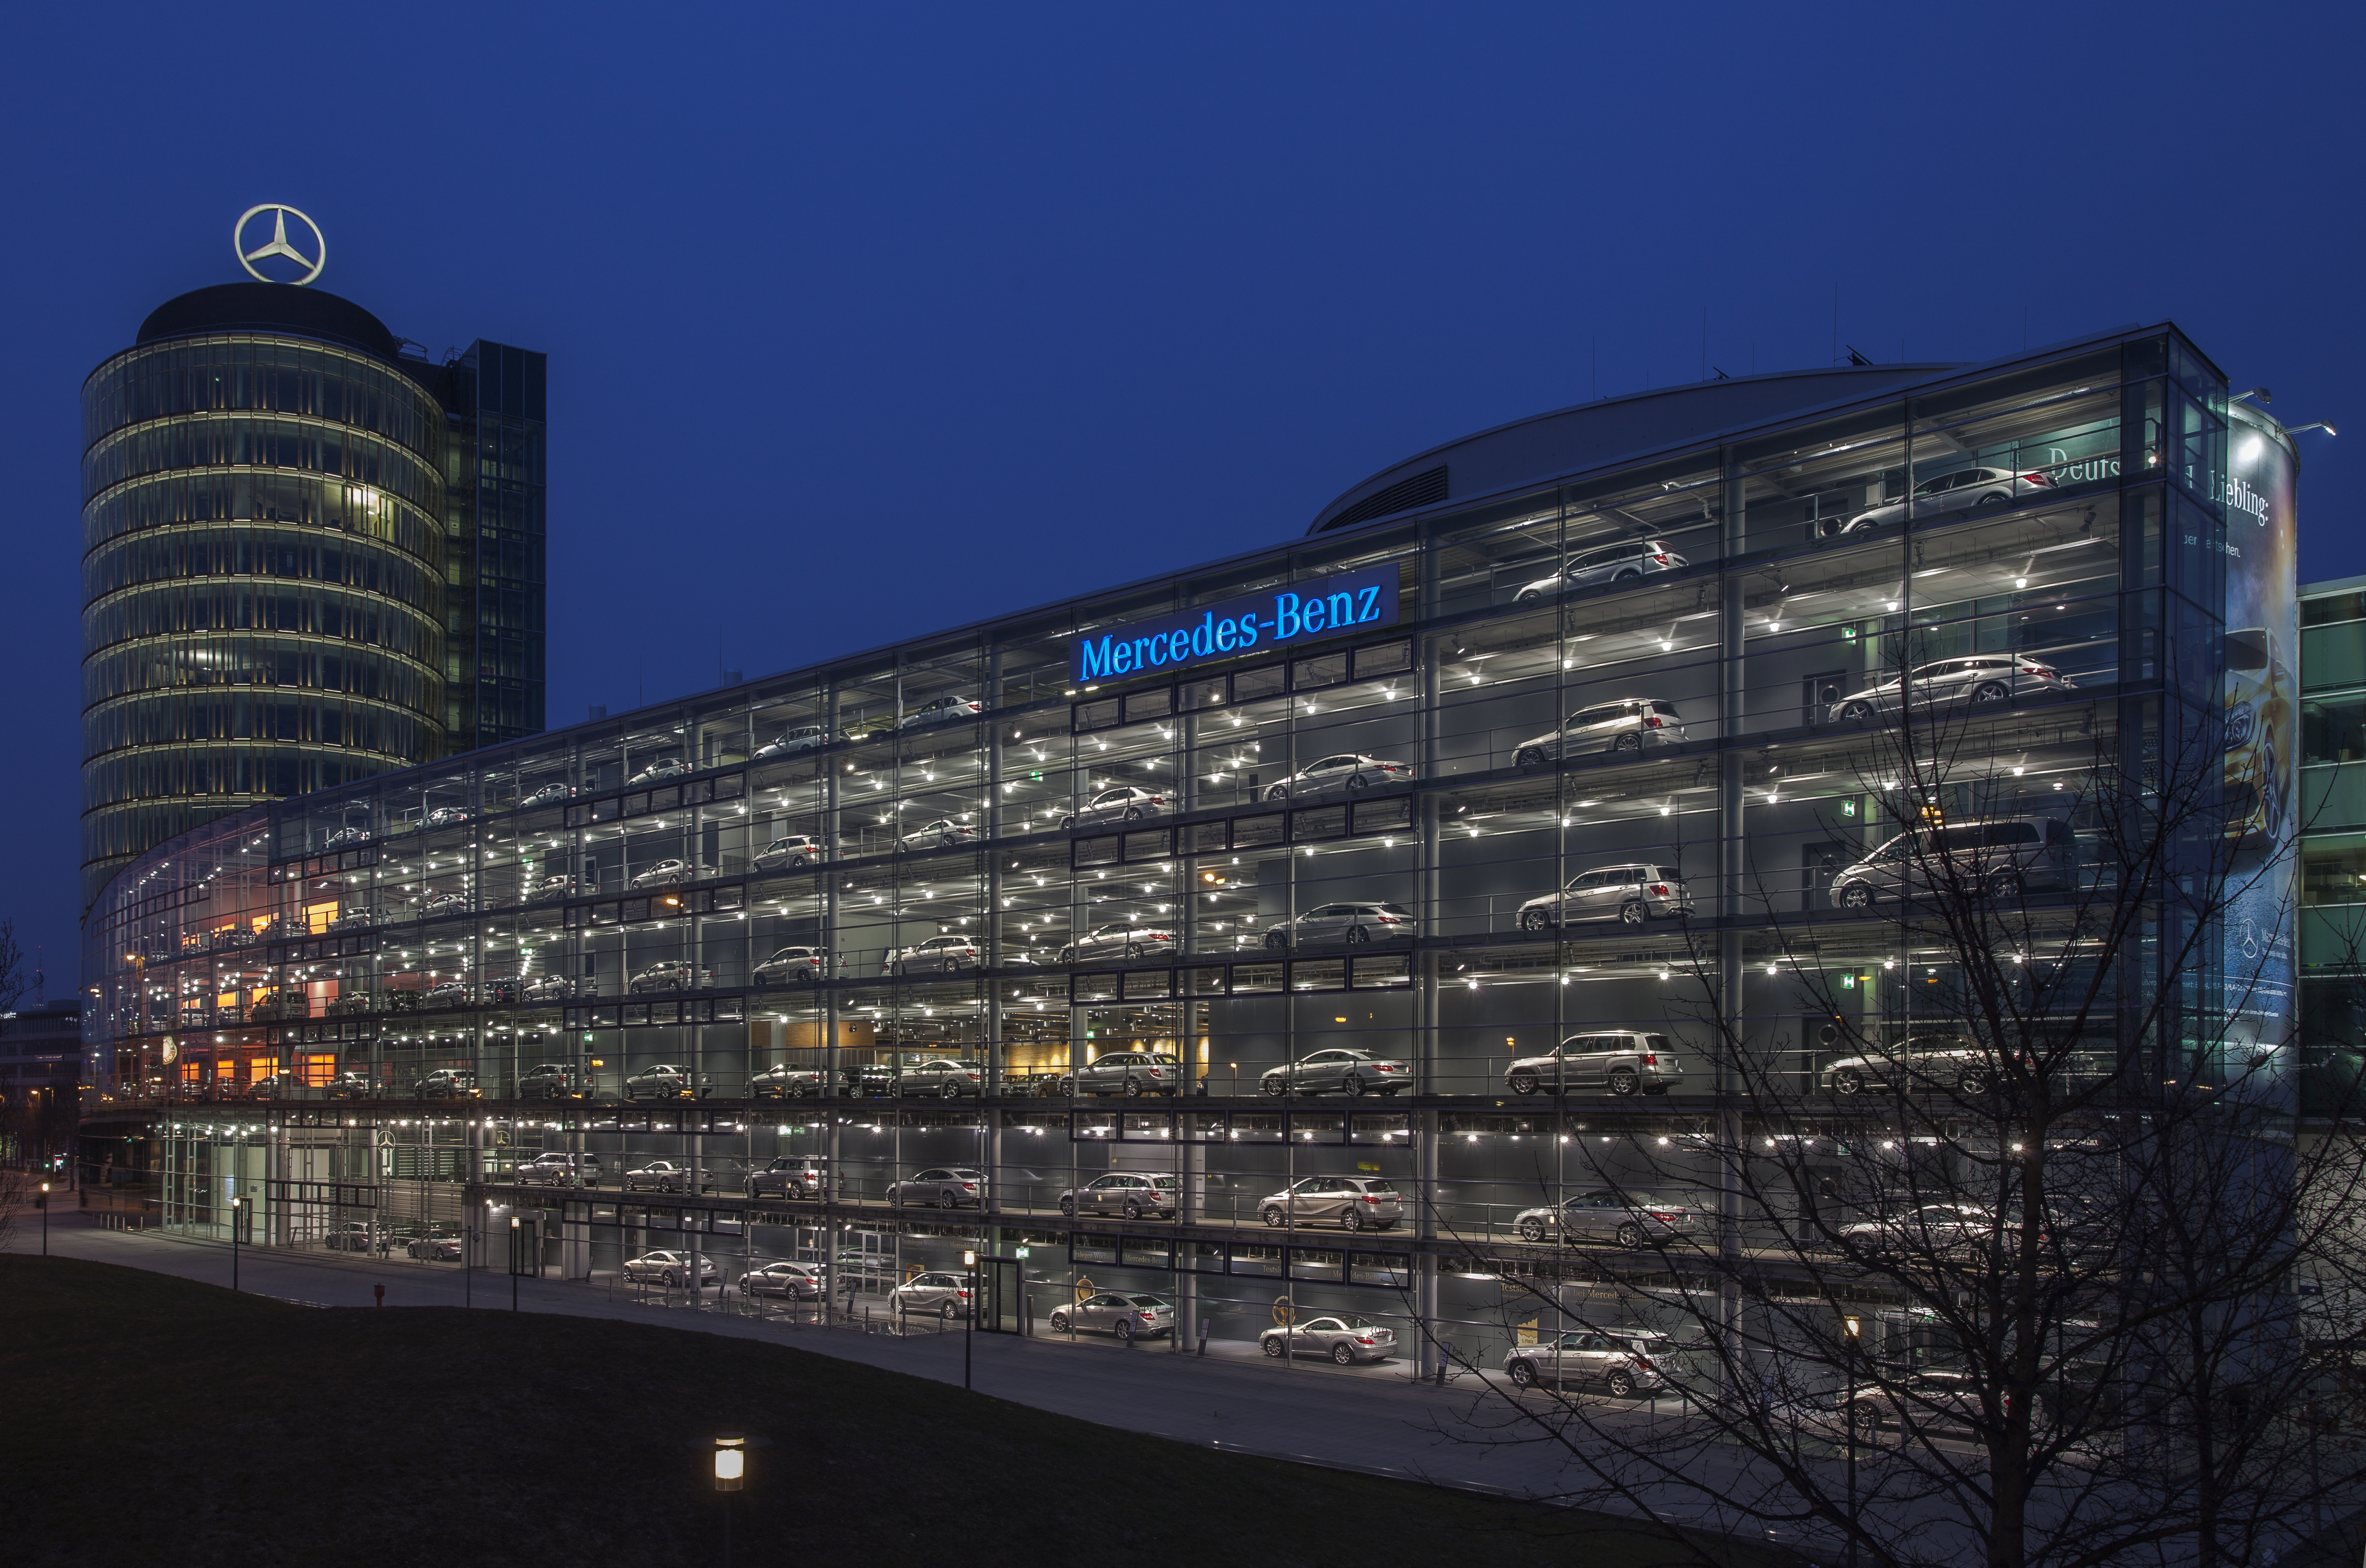 Concesionario de Mercedes-Benz, Múnich, Alemania, 2013-03-30, DD 20